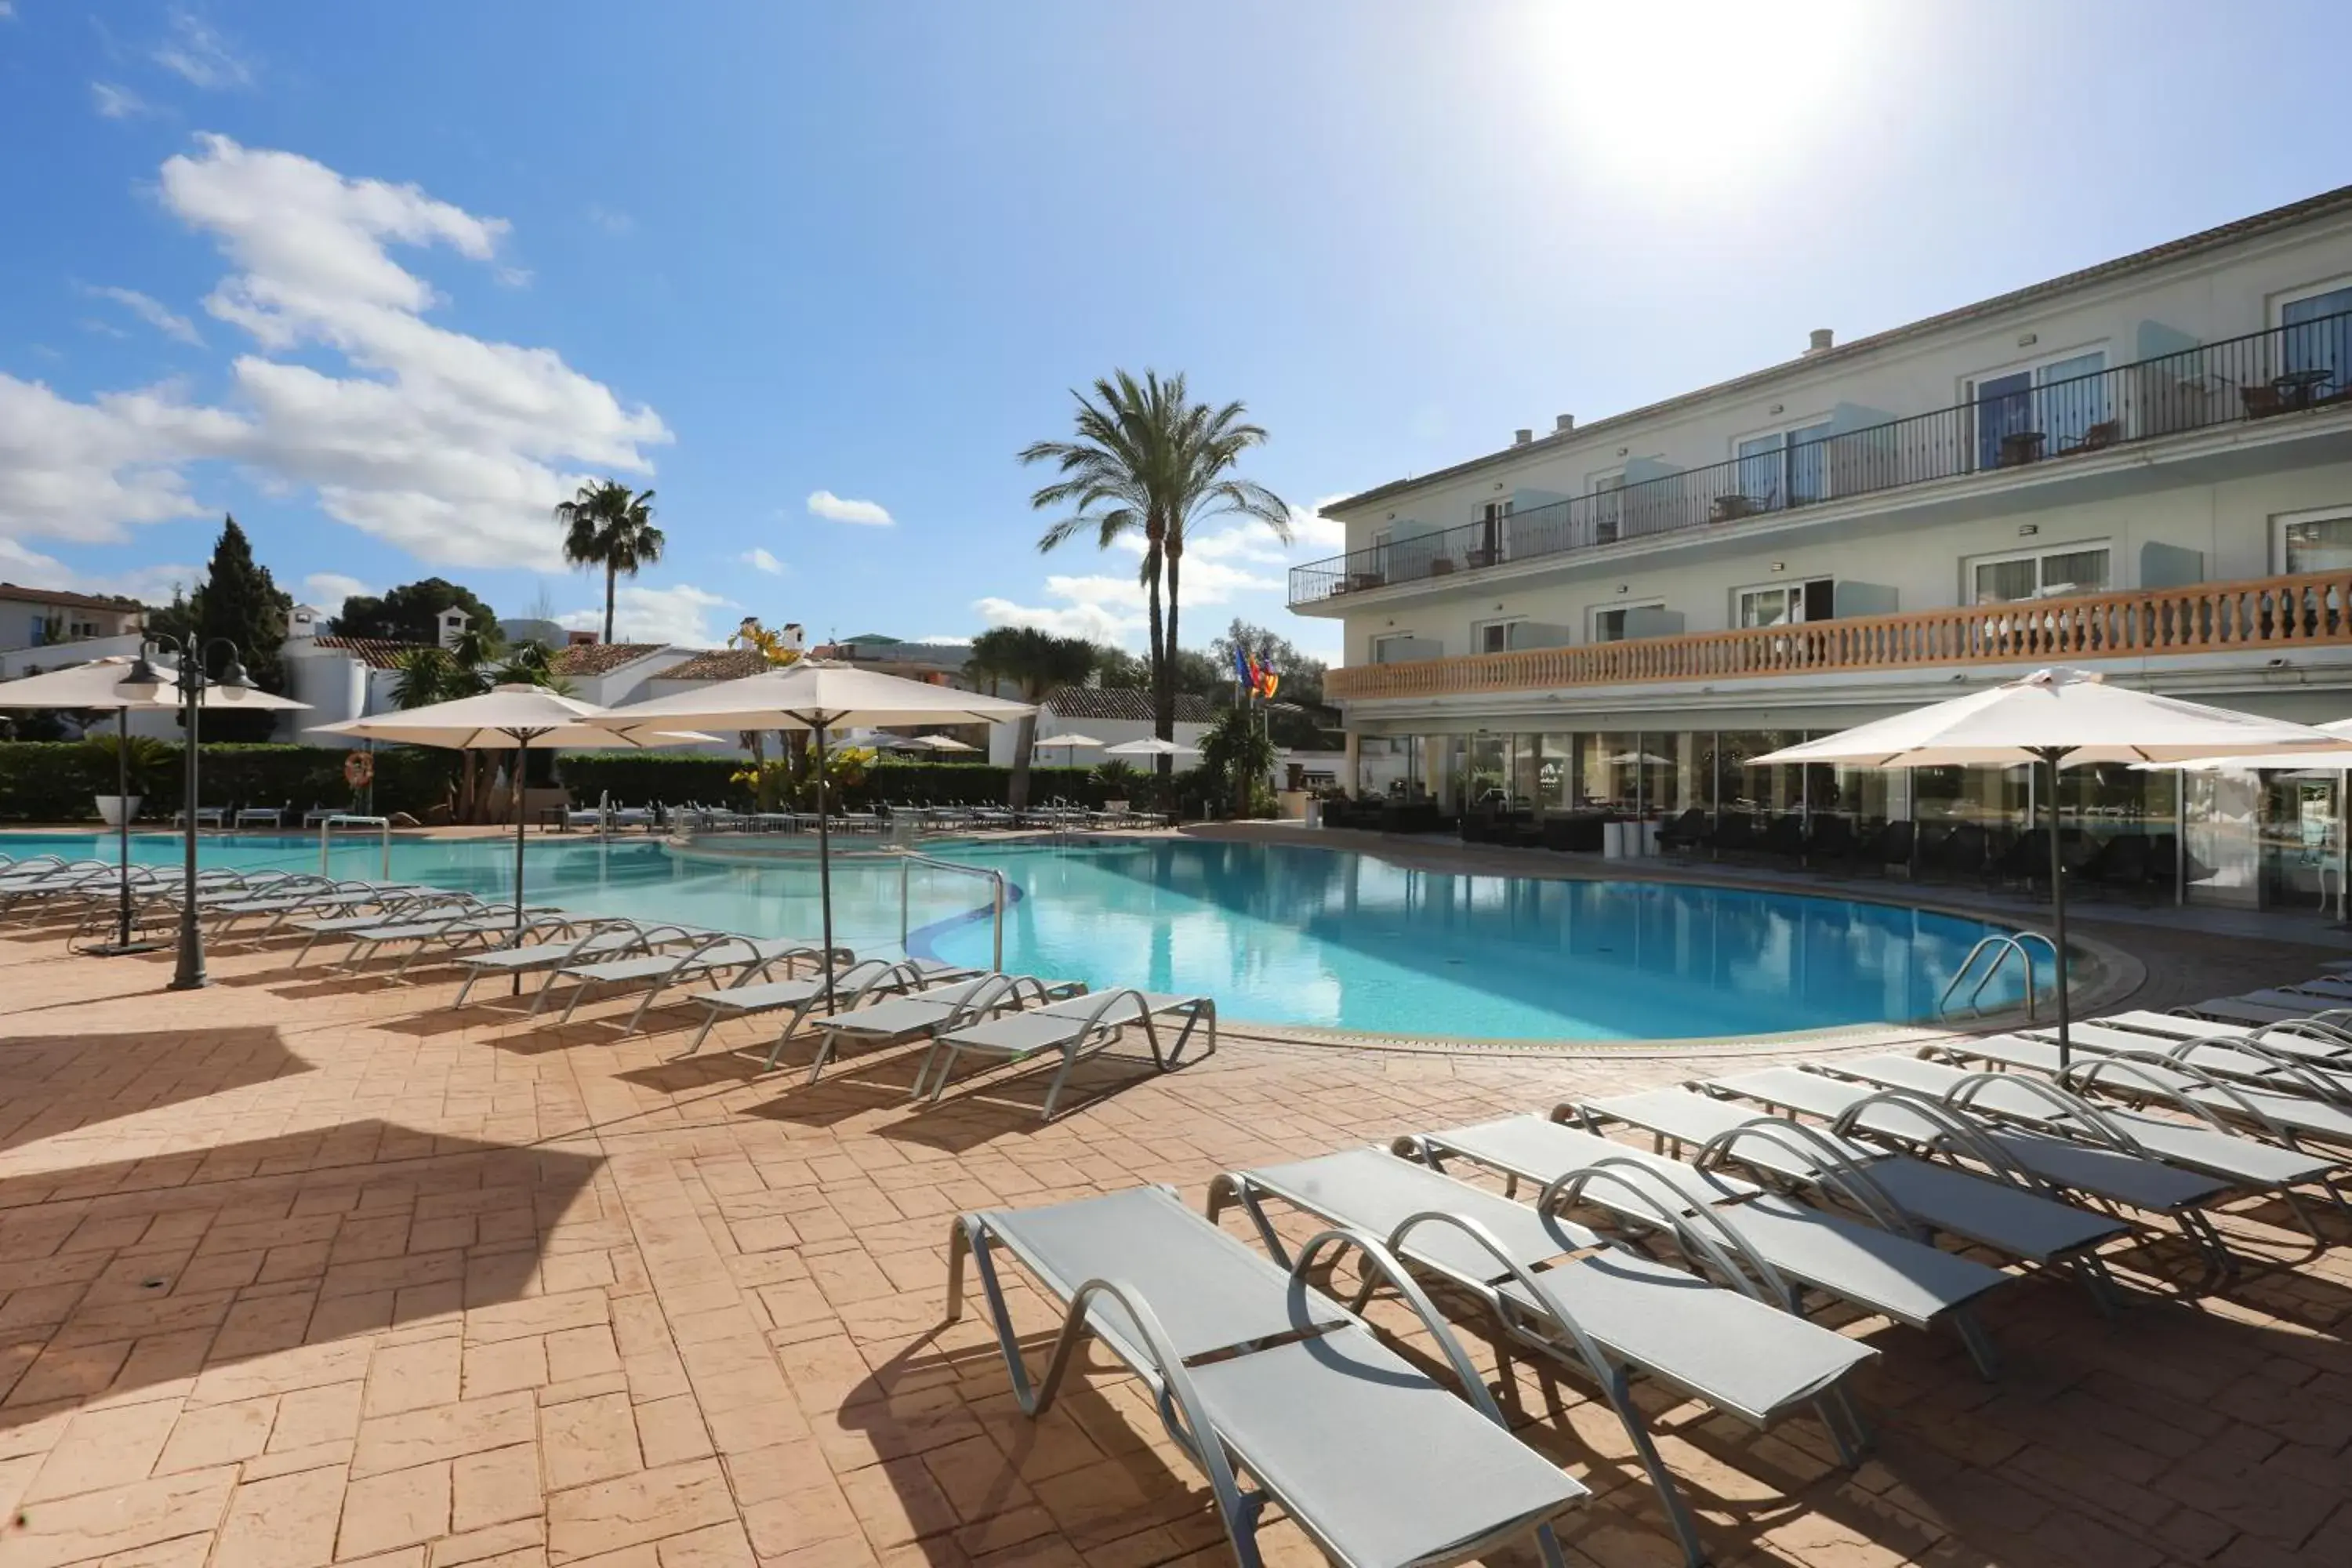 Property building, Swimming Pool in Hotel La Pergola Mallorca